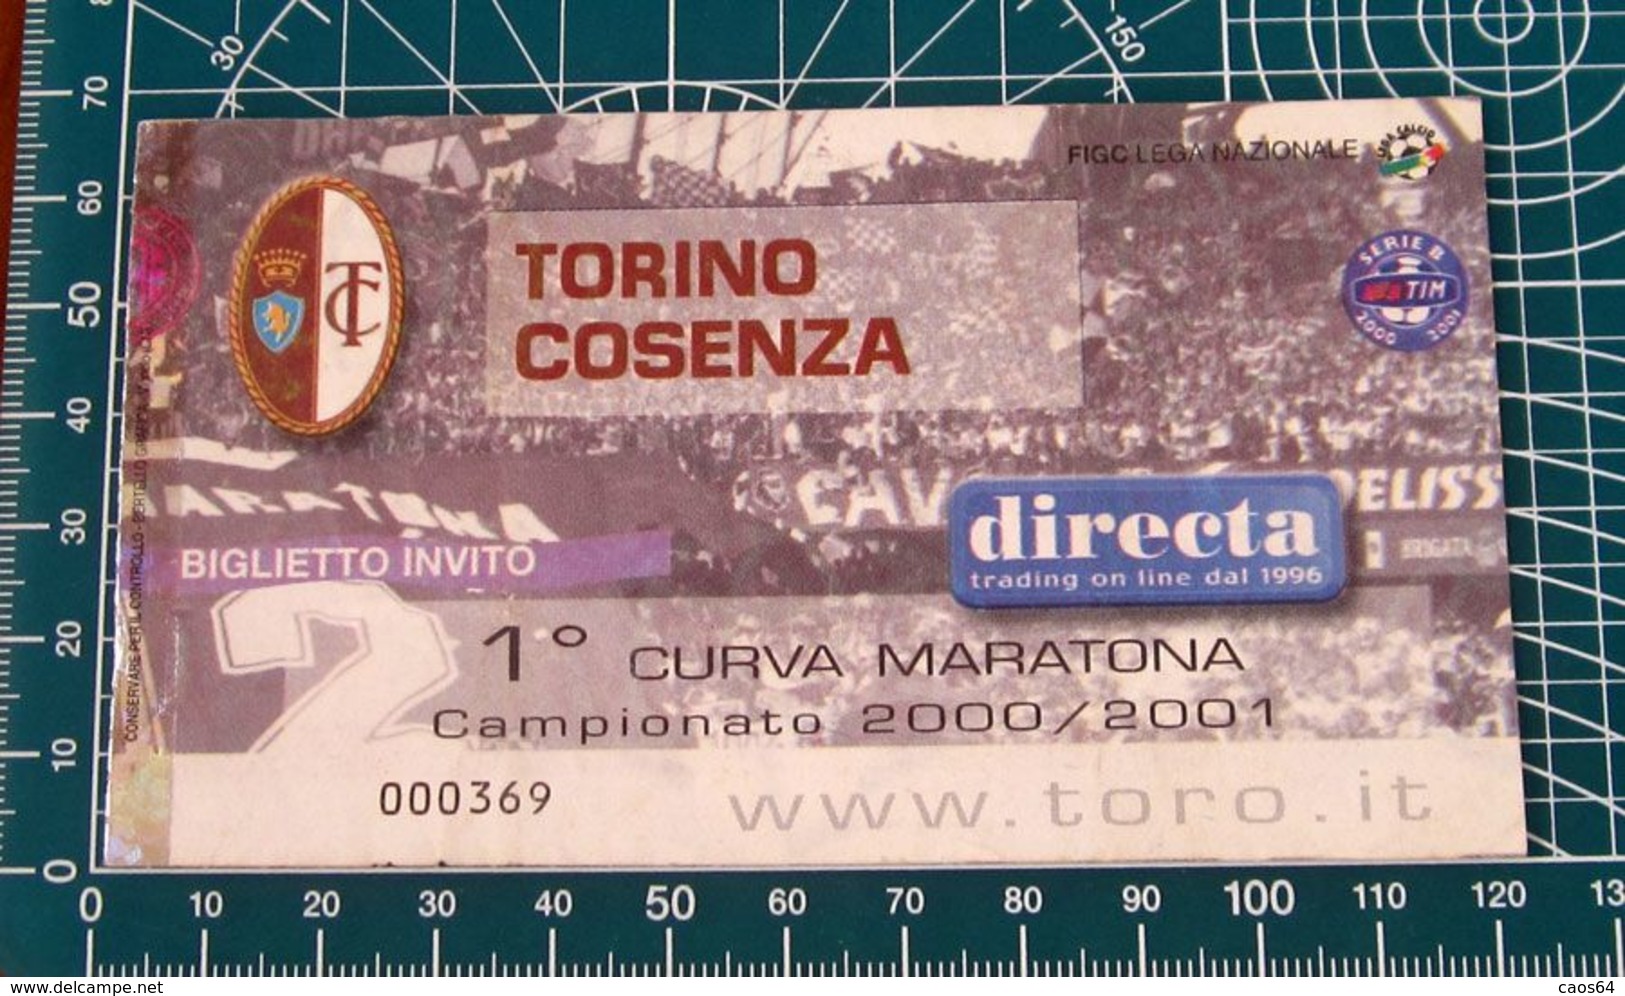 Calcio Ticket BIGLIETTO TORINO - COSENZA 2000-2001 - Biglietti D'ingresso